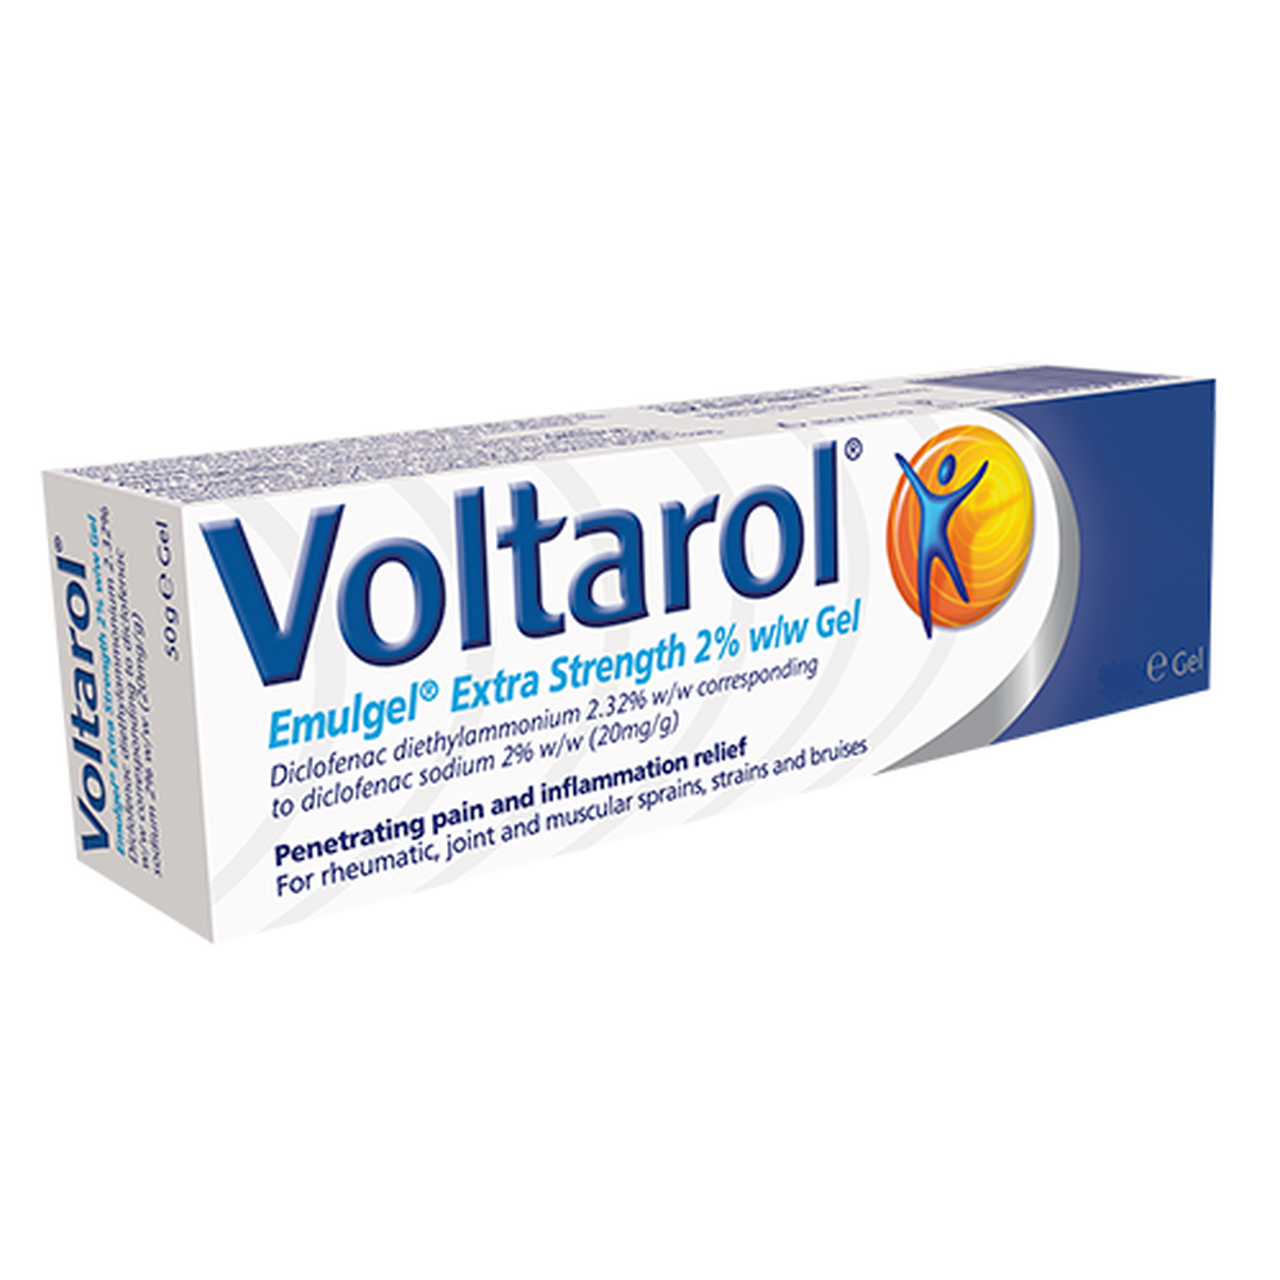 Voltarol Extra Strength 2% Gel  50G, Leahys pharmacy